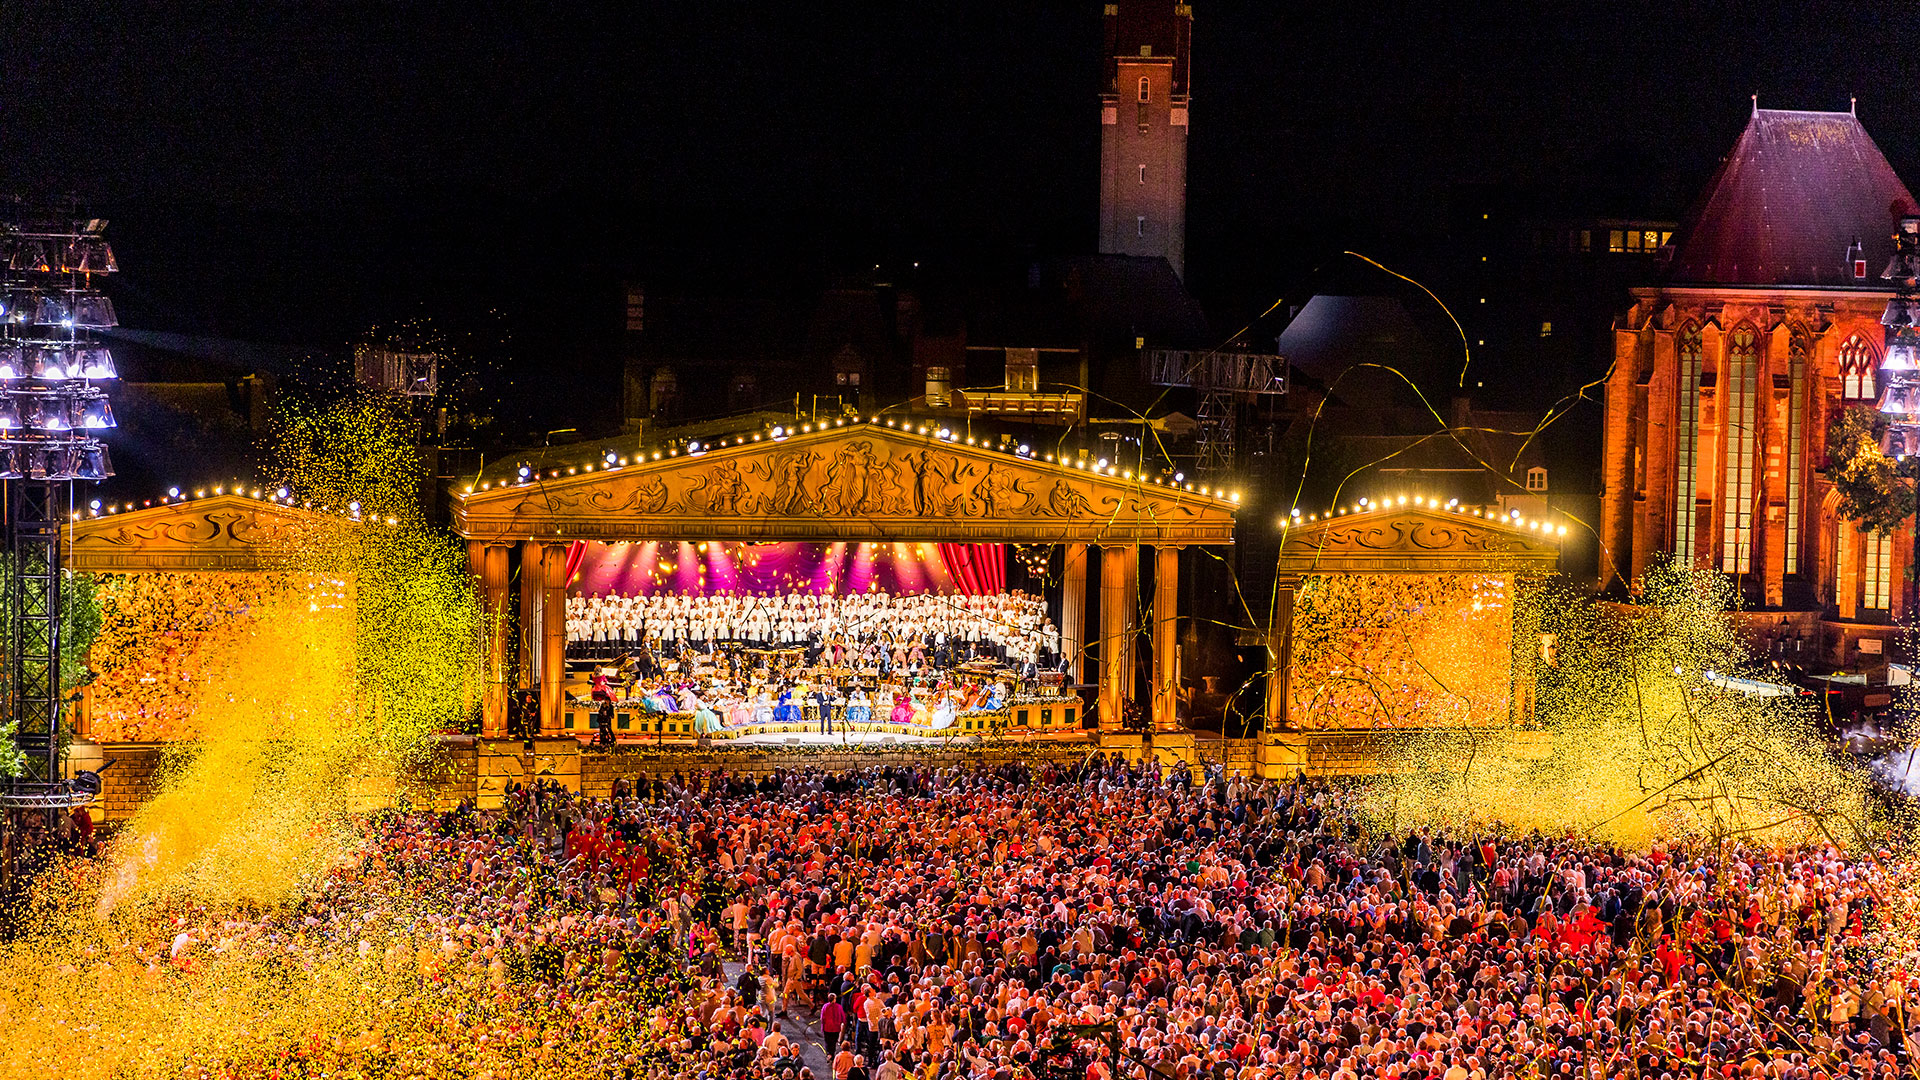 La Plaza Vrijtjof de Maastricht, durante el concierto de André Rieu y su orquesta. (Foto: Marcel van Hoorn).